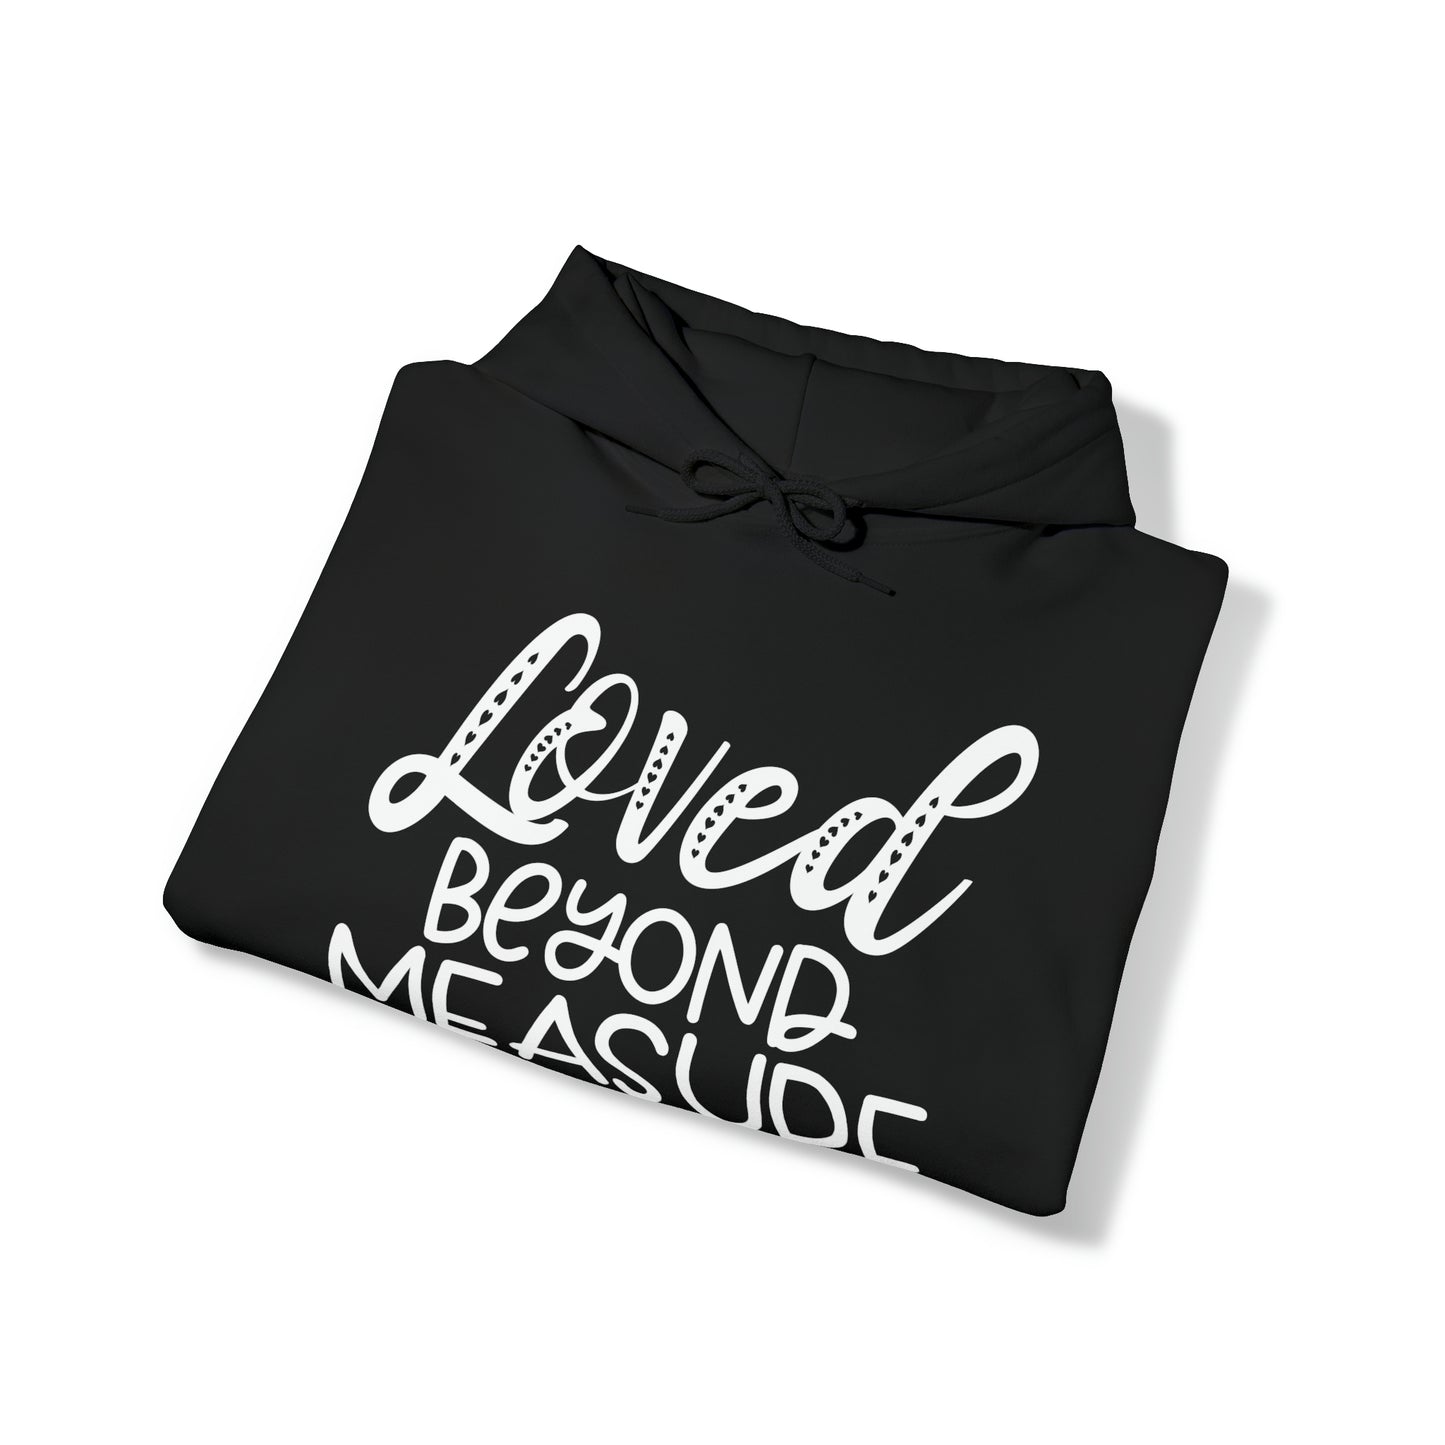 Loved Beyond Measure Unisex Heavy Blend™ Hooded Sweatshirt